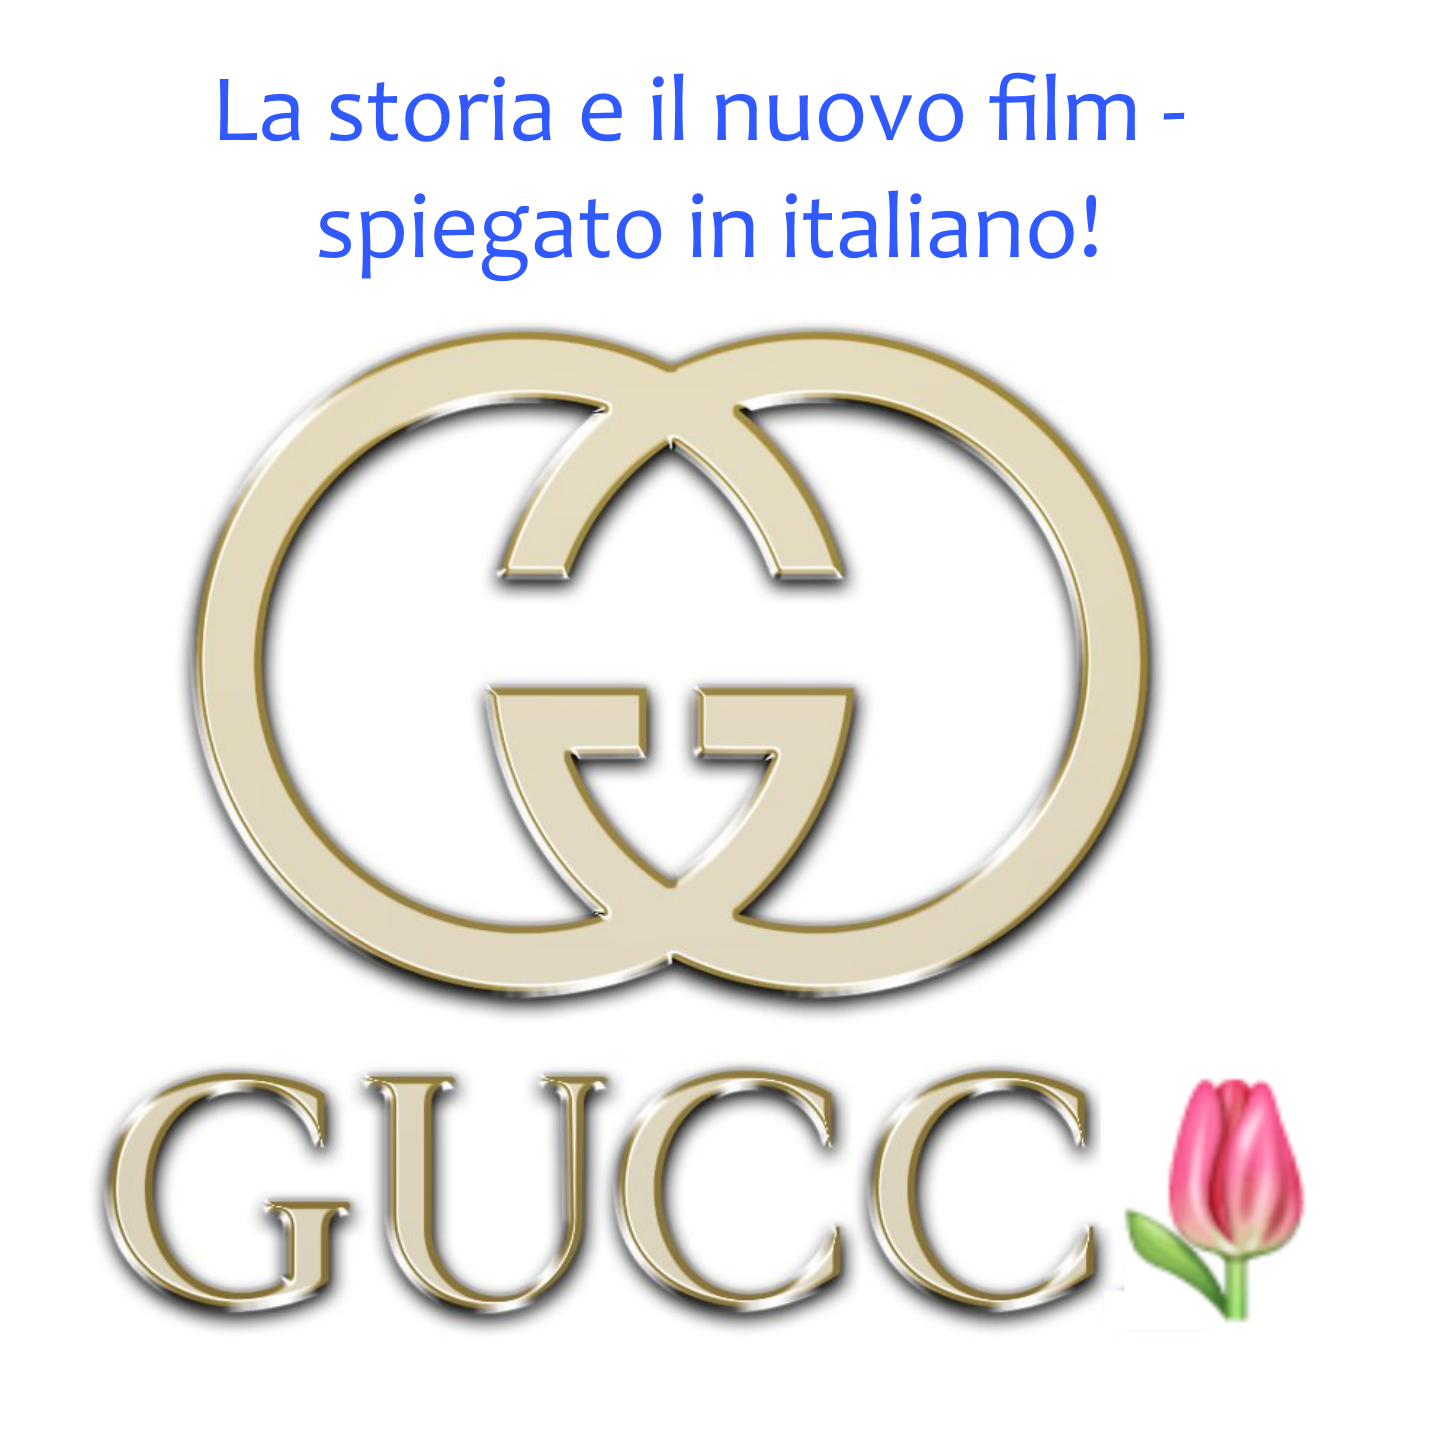 Ep. 69 - Gucci: la storia e l'altra verita